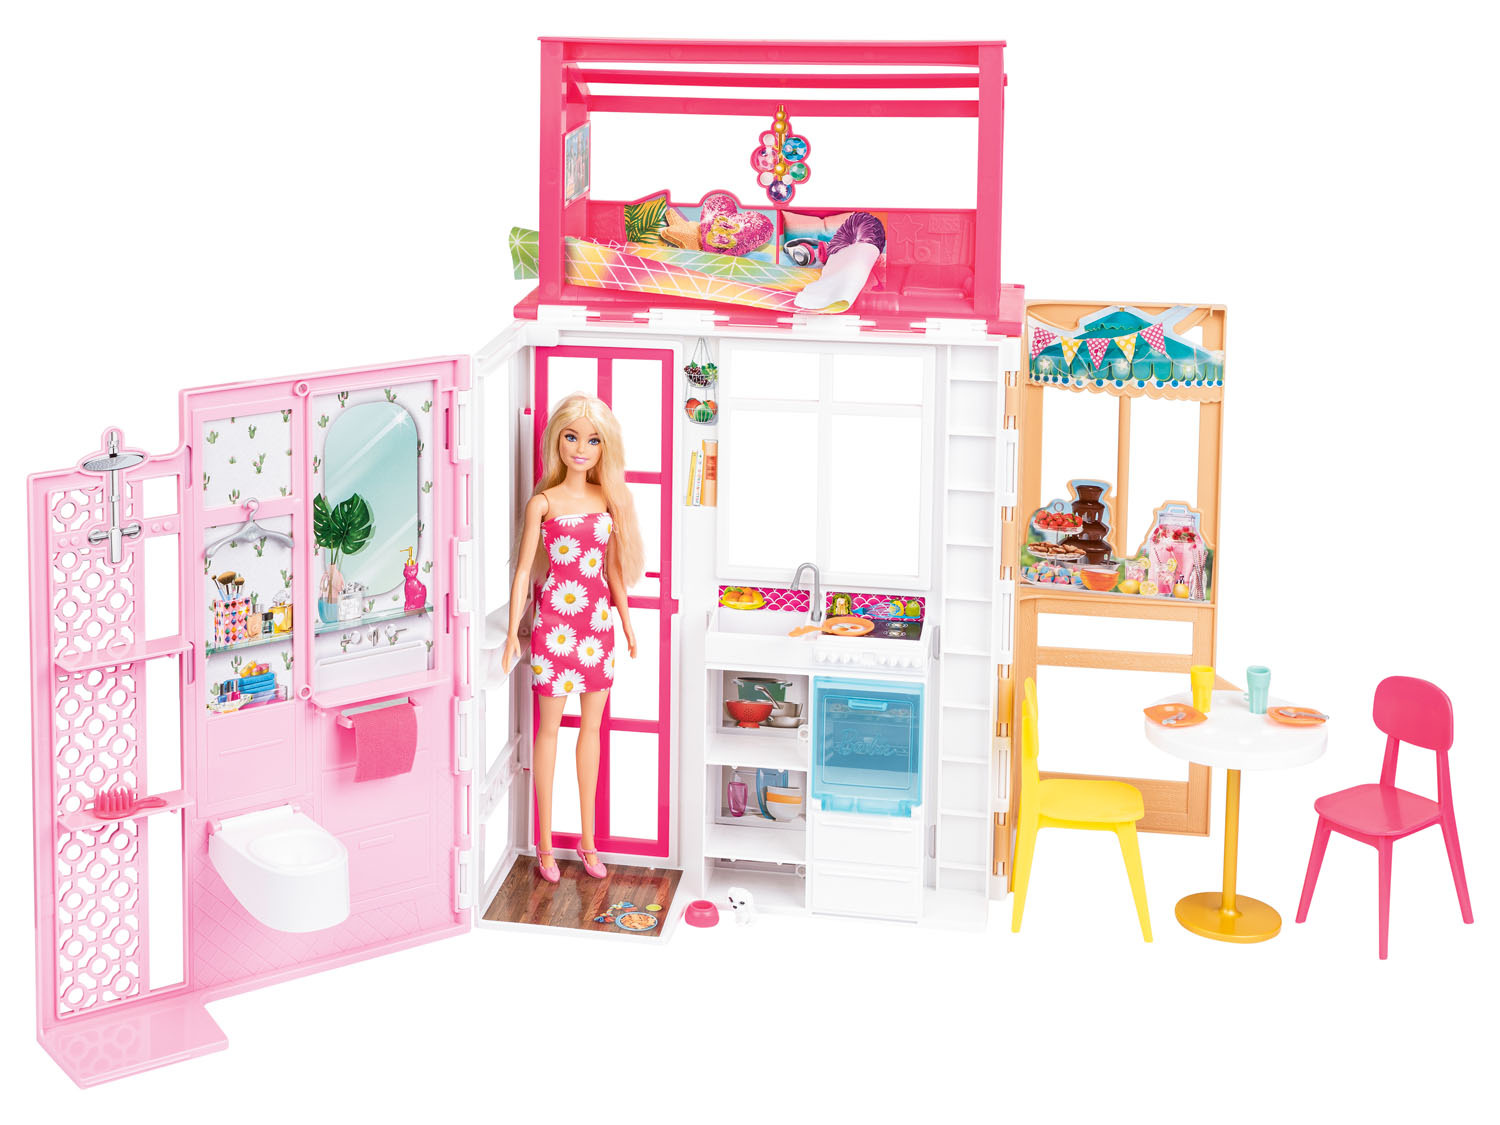 und Möbeln Ferienhaus, Puppe, | LIDL mit Barbie tragbar